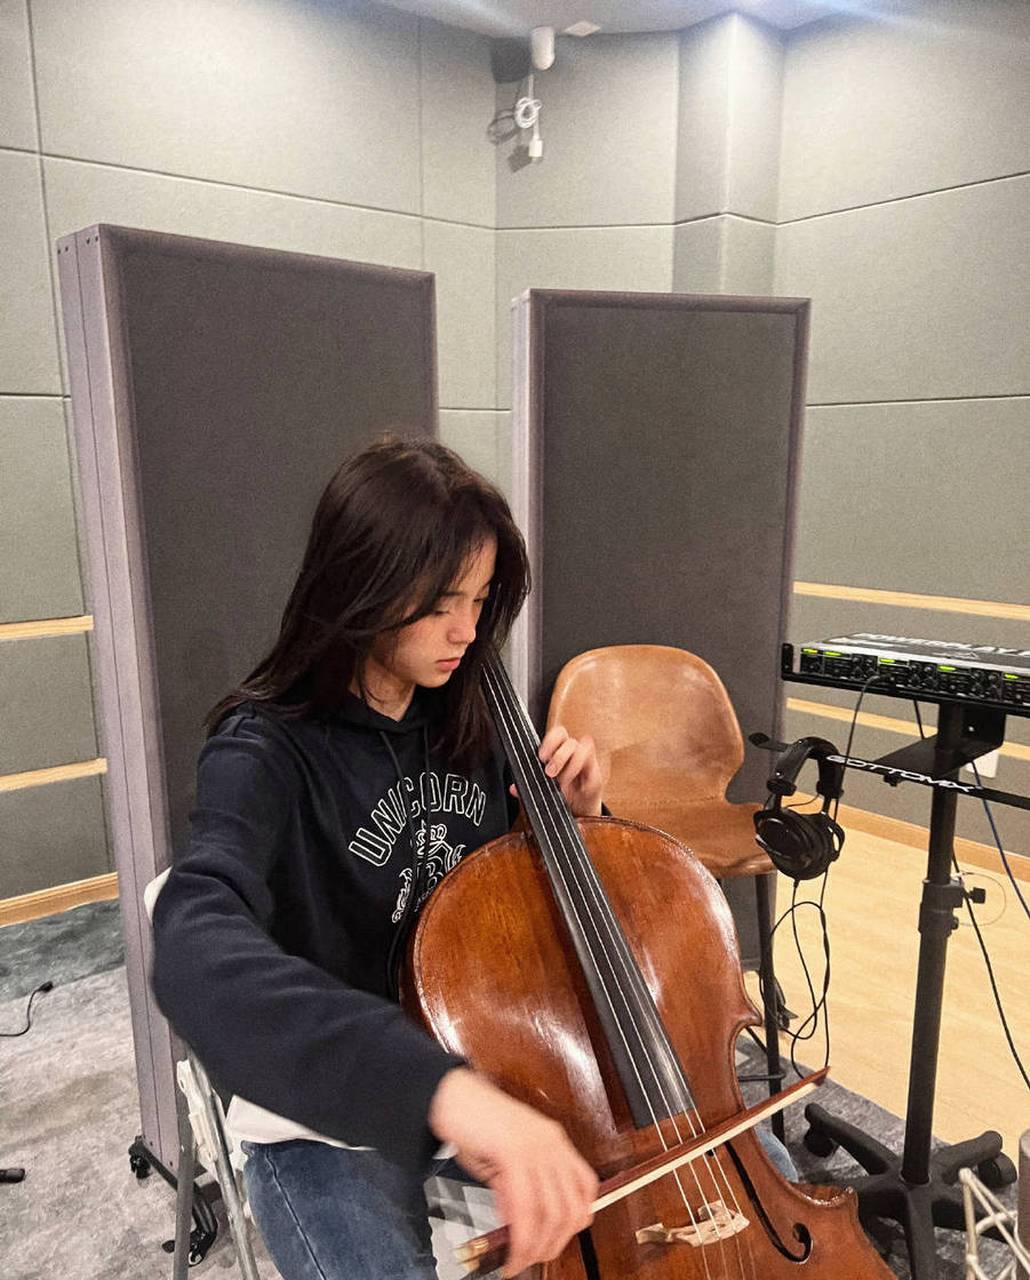 欧阳娜娜在社交平台分享一组自己拉大提琴时的随拍,青春靓丽,美丽动人